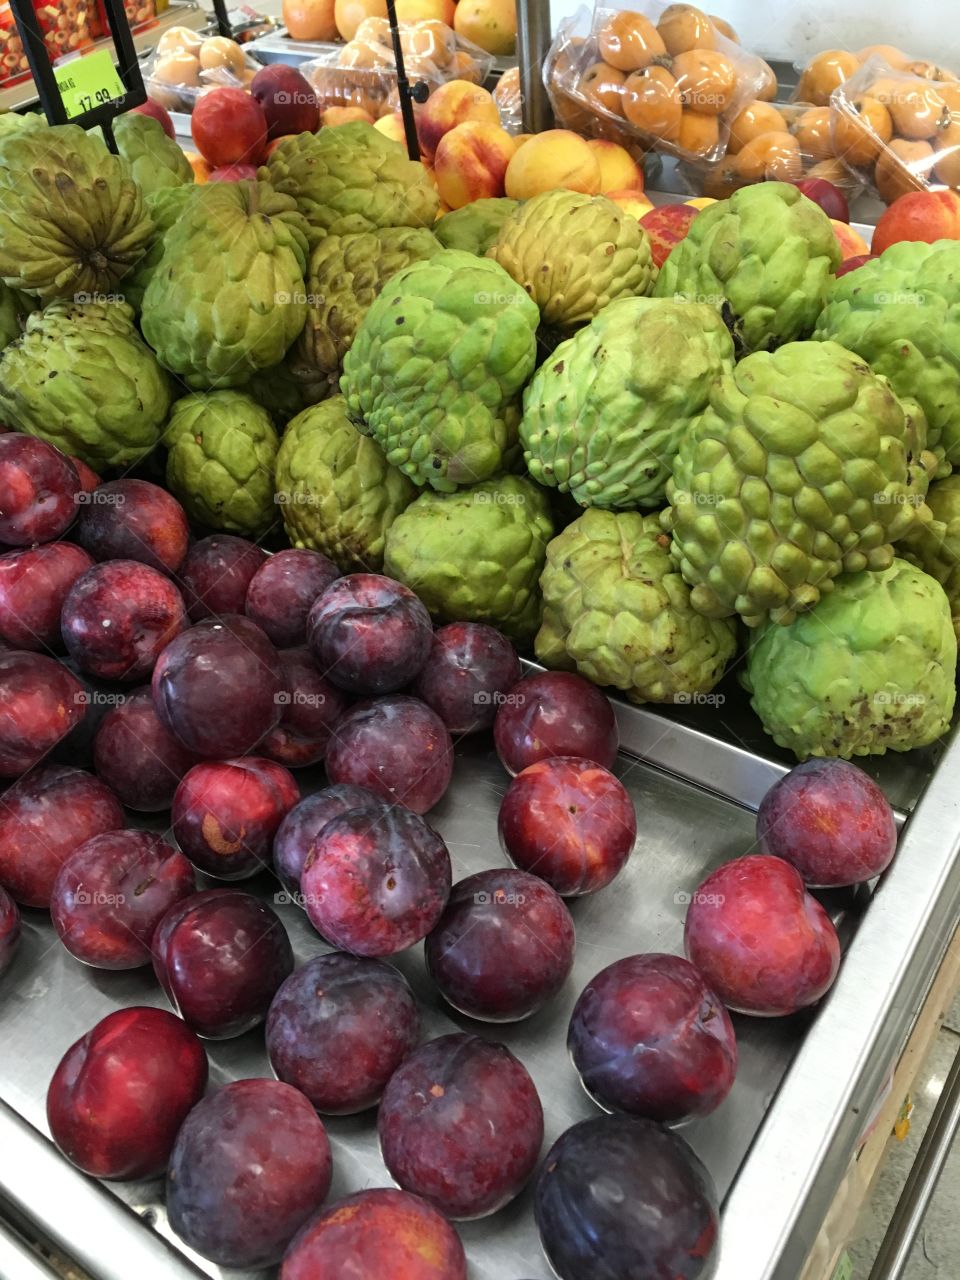 Os reajustes de #frutas e #verduras provam: a #inflação divulgada pelo Governo nunca é a mesma sentida pelo nosso bolso!
Em: https://professorrafaelporcari.com/2017/10/01/como-justificar-tais-precos-de-hortifrutigranjeiros/
Estive em um mercado especializado em produtos hortifrutis e levei um susto: kiwi a R$ 20,00 / kilo, uma cumbuca de morango a R$ 7,00 a unidade (e de má qualidade). Ameixas a R$ 19,50 e até a pinha (que está sobrando na casa do meu pai) a R$ 25,00 / kilo. 
Como não acreditar que a inflação é altíssima e os números divulgados pelo governo não são os reais?